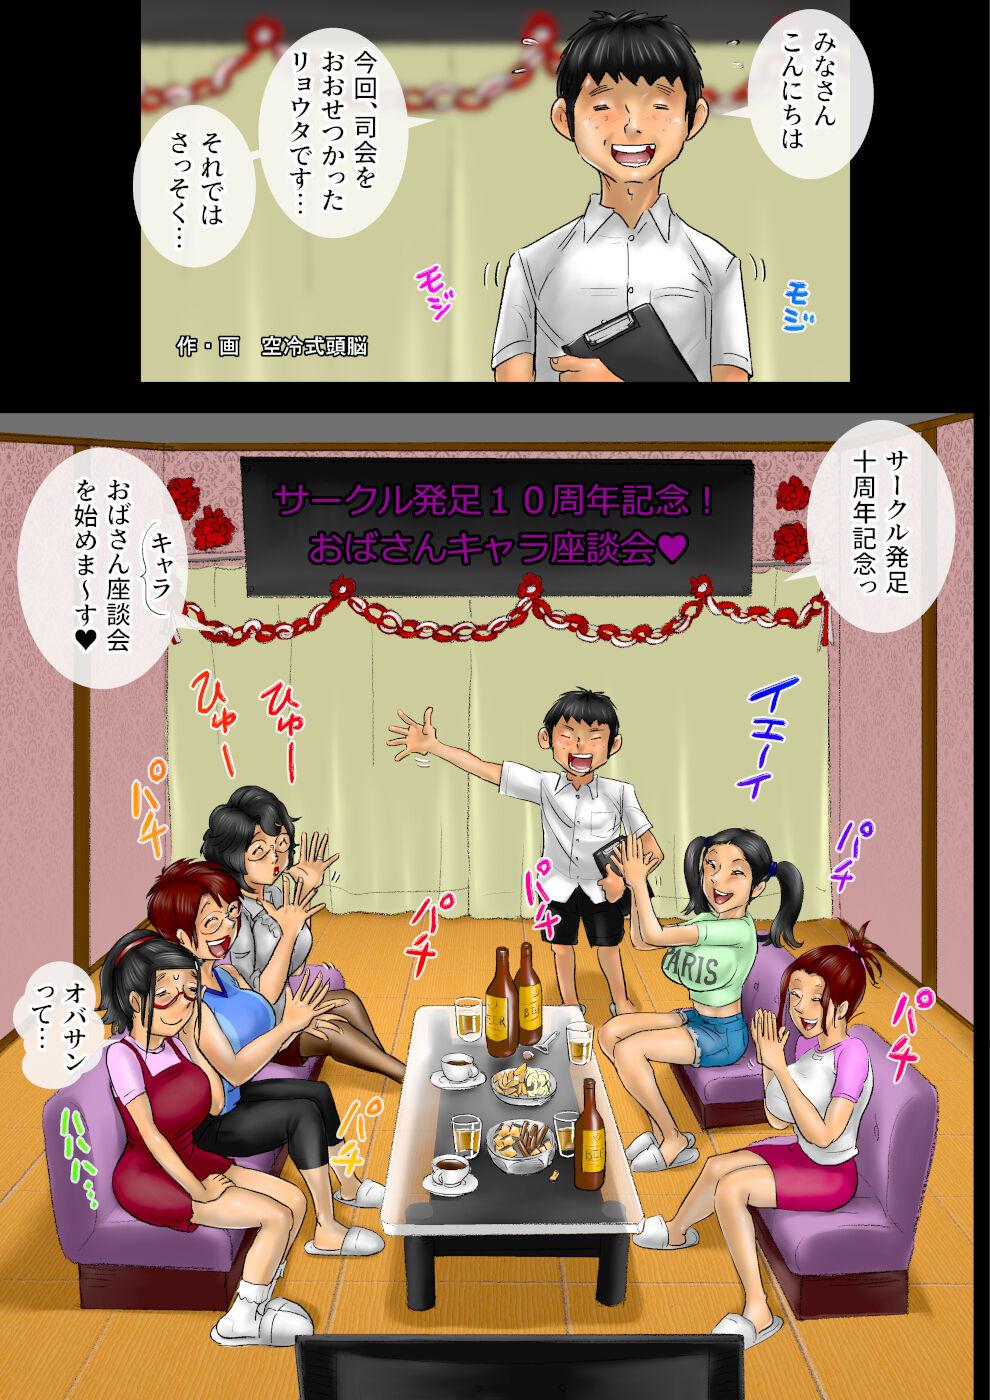 Amatuer Sākuru hossoku 10 shūnenkinen obasan kyara zadan-kai Costume - Page 2